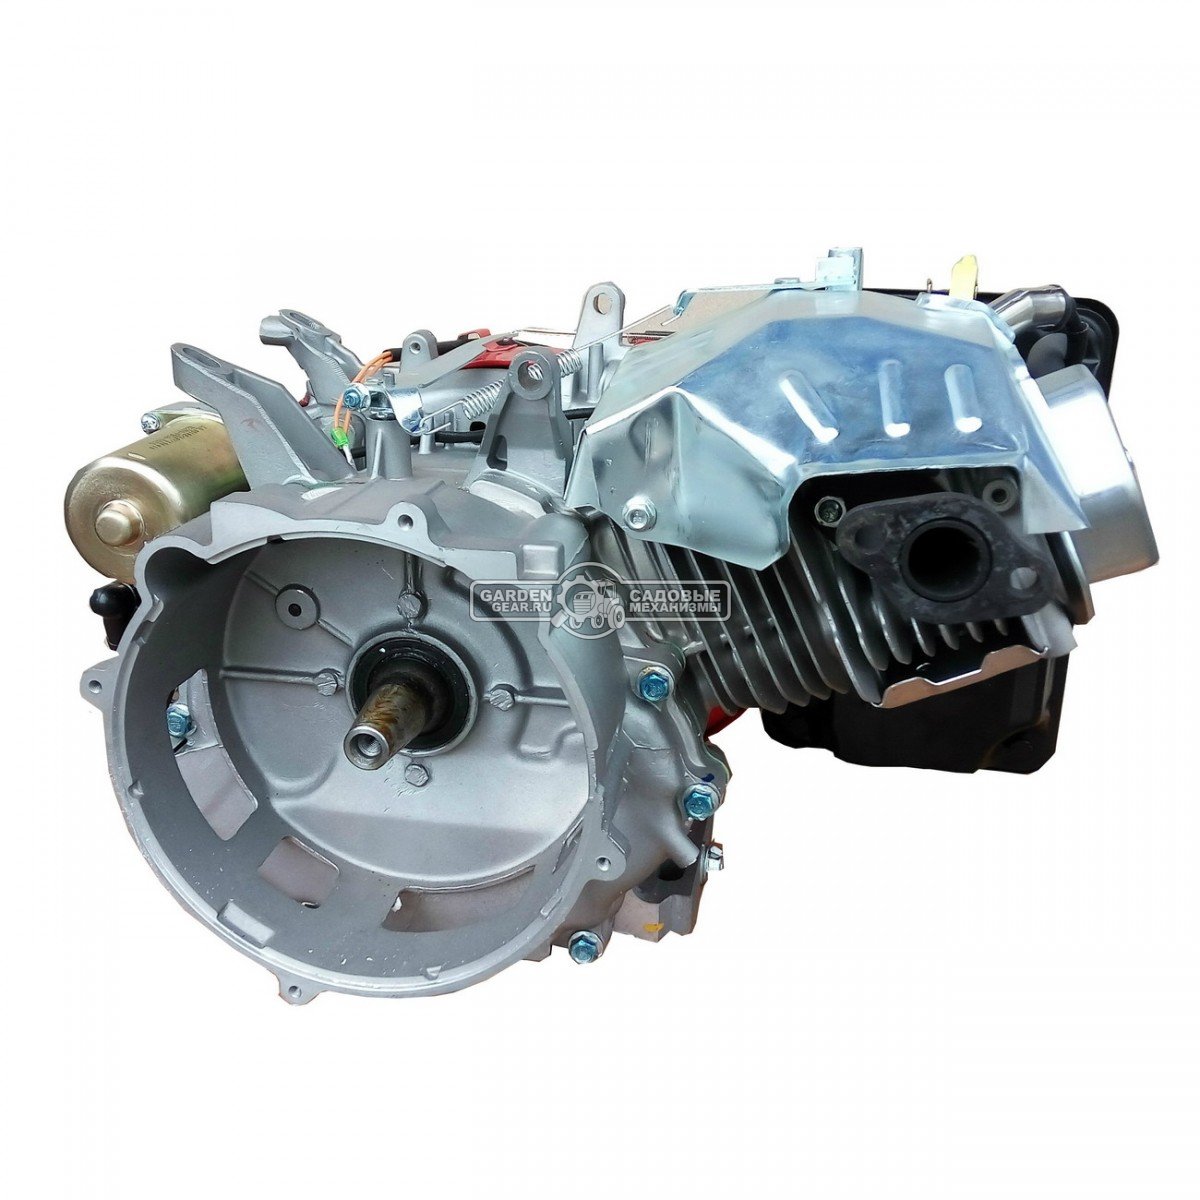 Бензиновый двигатель Zongshen 190F-2 (PRC, 14 л.с., 420 см3. конус  1:5, 33 кг)